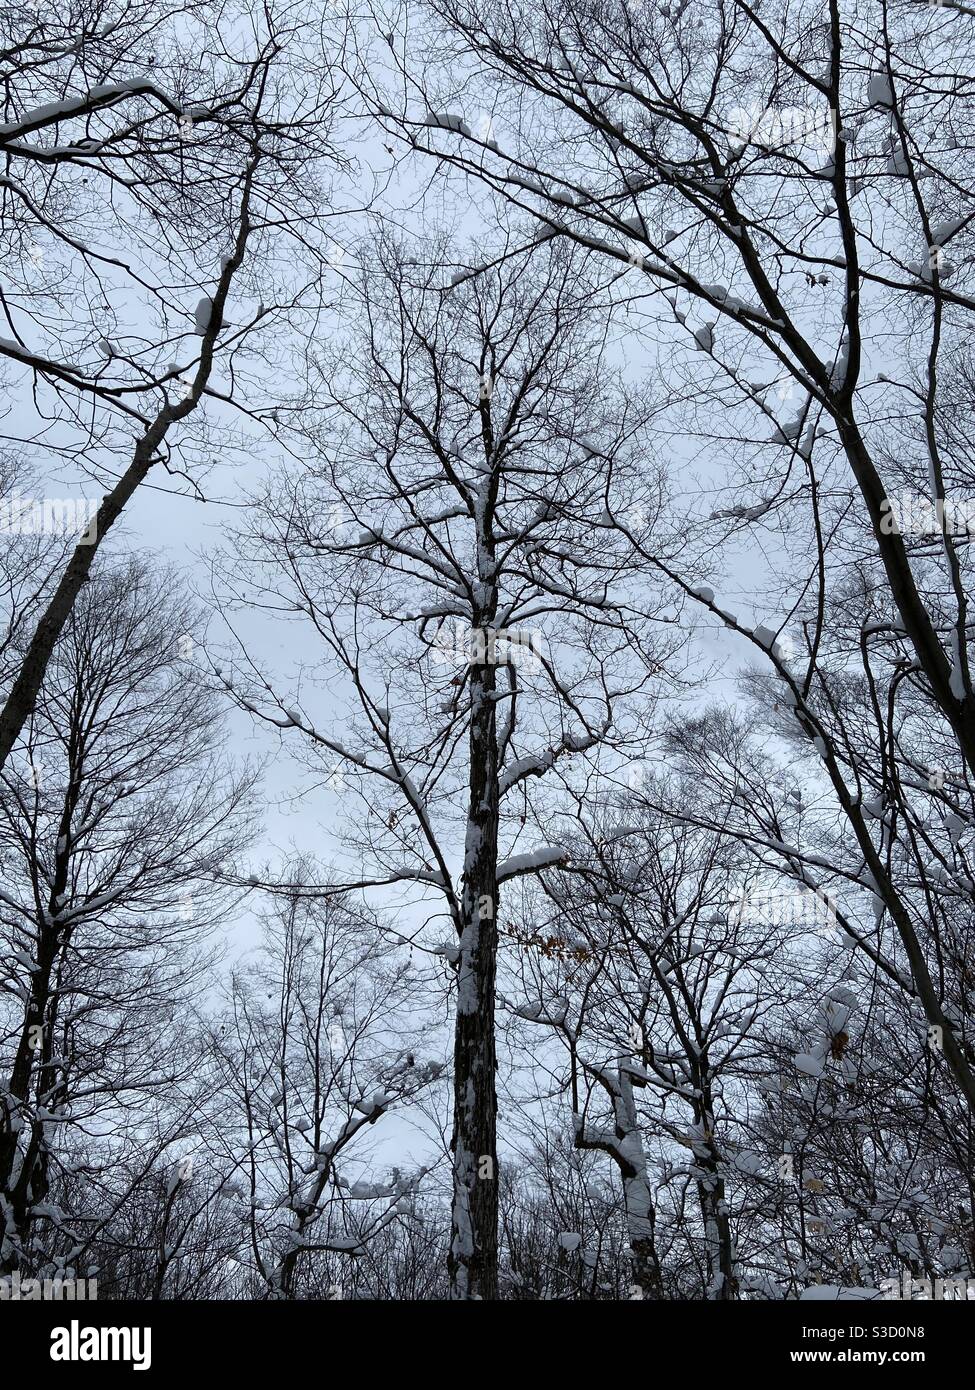 Schöne, verschneite Bäume in einem ruhigen Winterwald mitten im Winter mit Schneeklümpchen an ihren Ästen nach starkem Schneefall Stockfoto